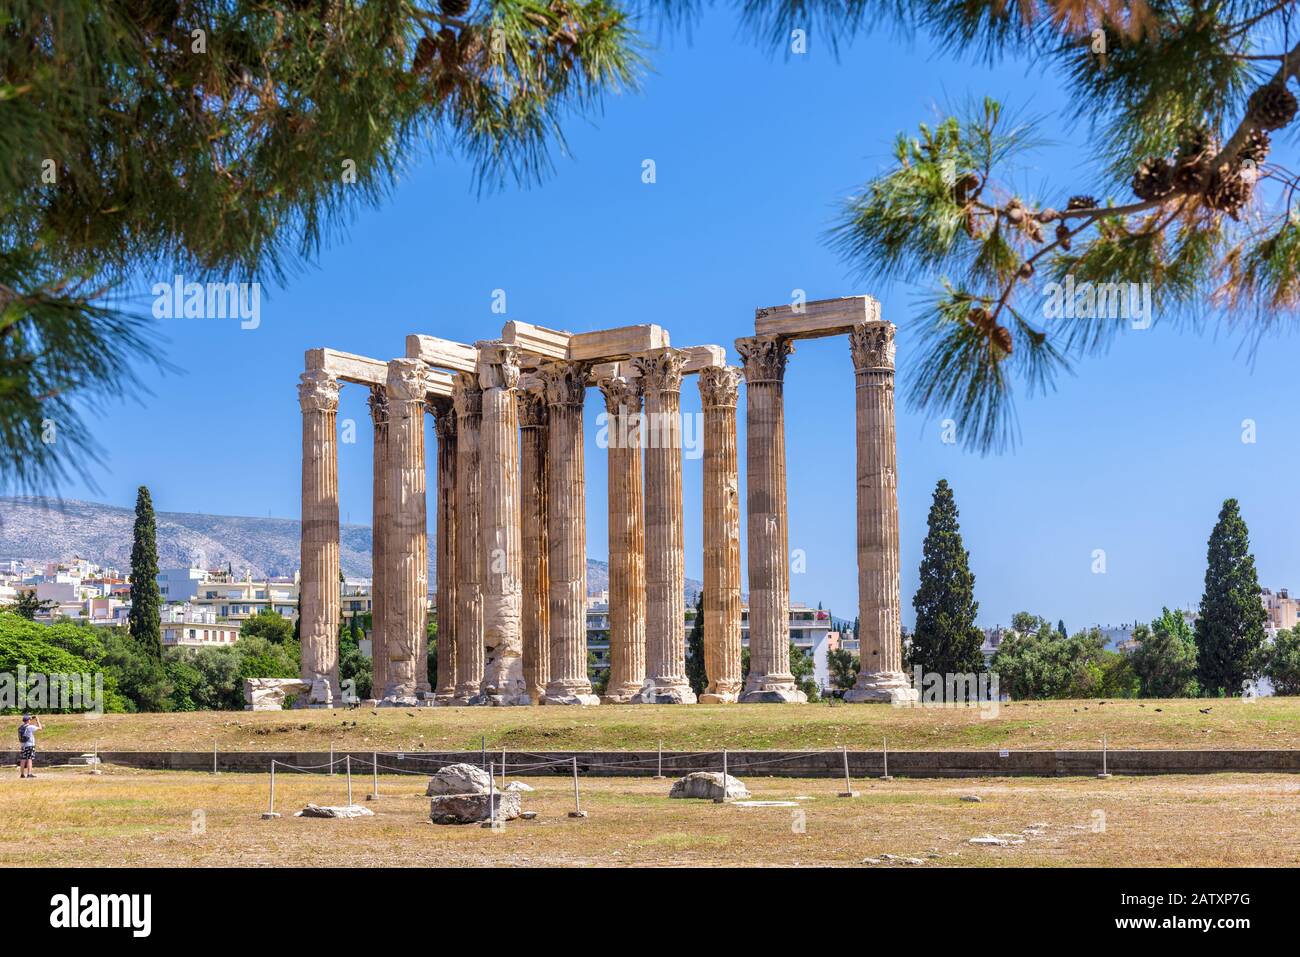 Tempel des olympischen Zeus, Athen, Griechenland. Es ist eines der wichtigsten Wahrzeichen Athens. Panorama der berühmten Antiken griechischen Ruinen im Zentrum von Athen. Landschaftlich Schön Stockfoto